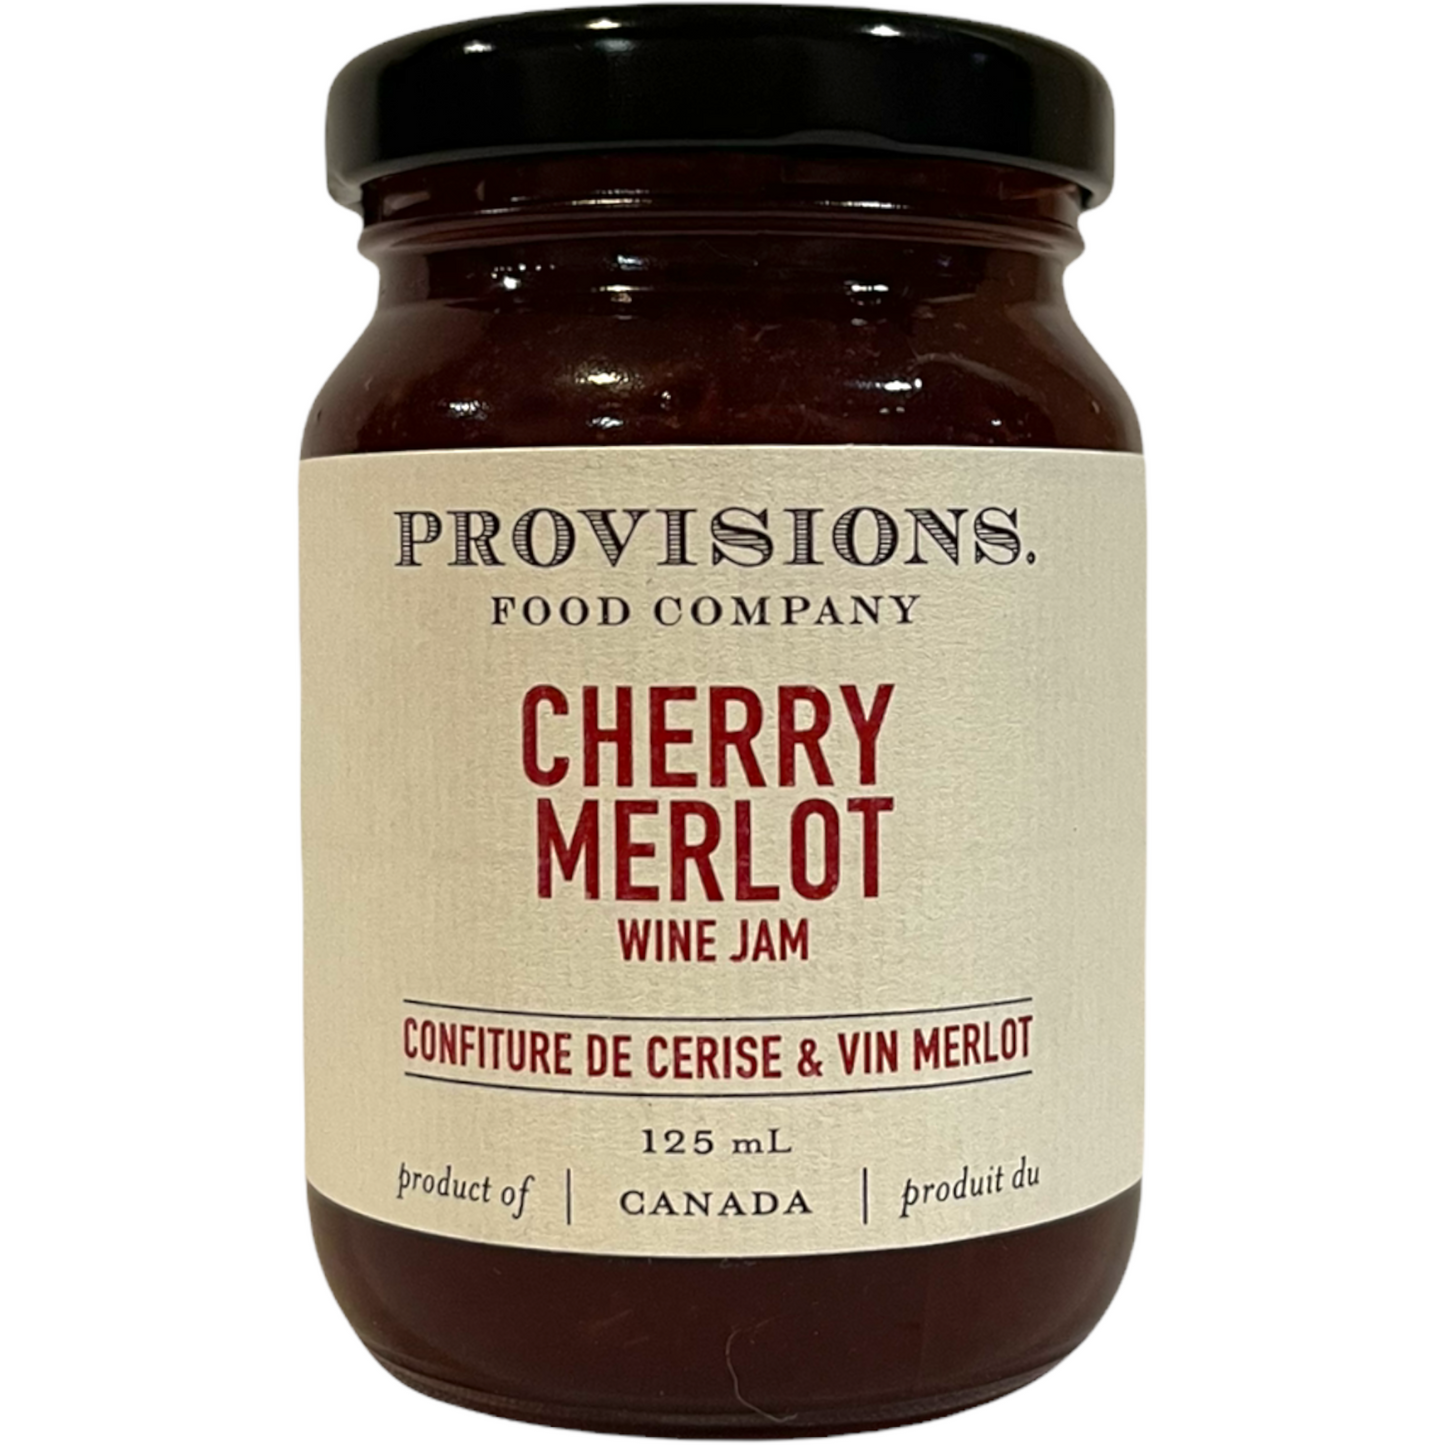 PROVISIONS CHERRY MERLOT WINE JAM